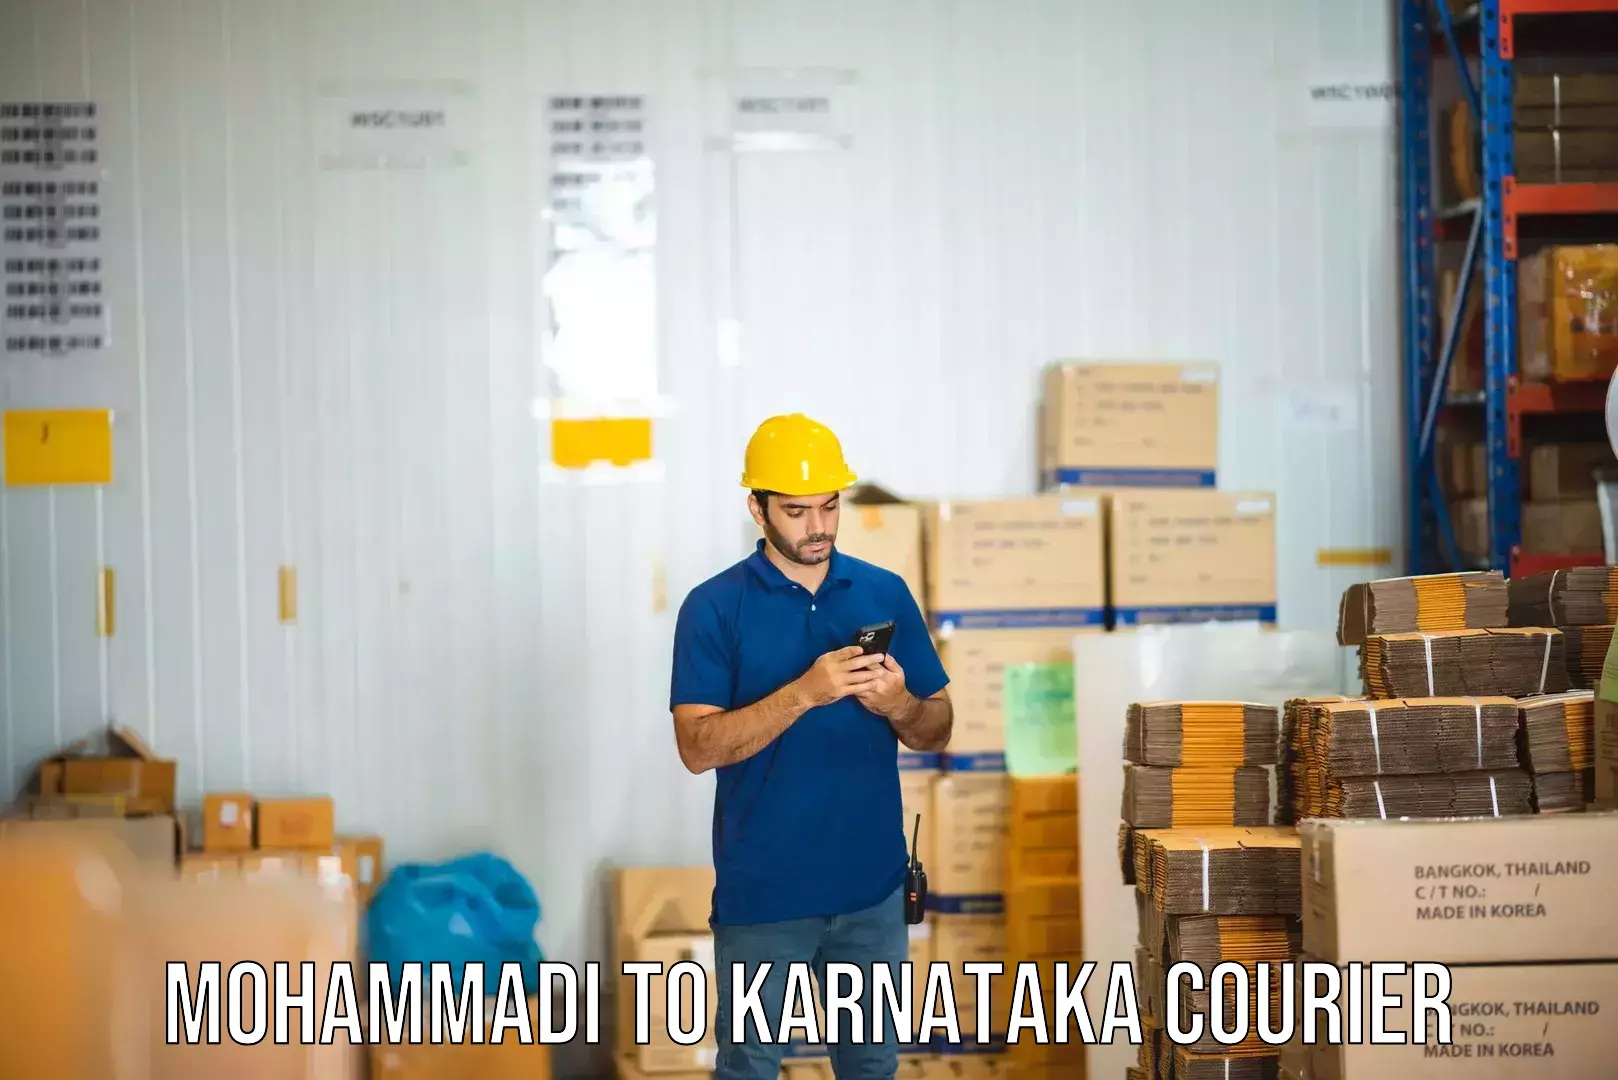 Secure shipping methods Mohammadi to Karnataka